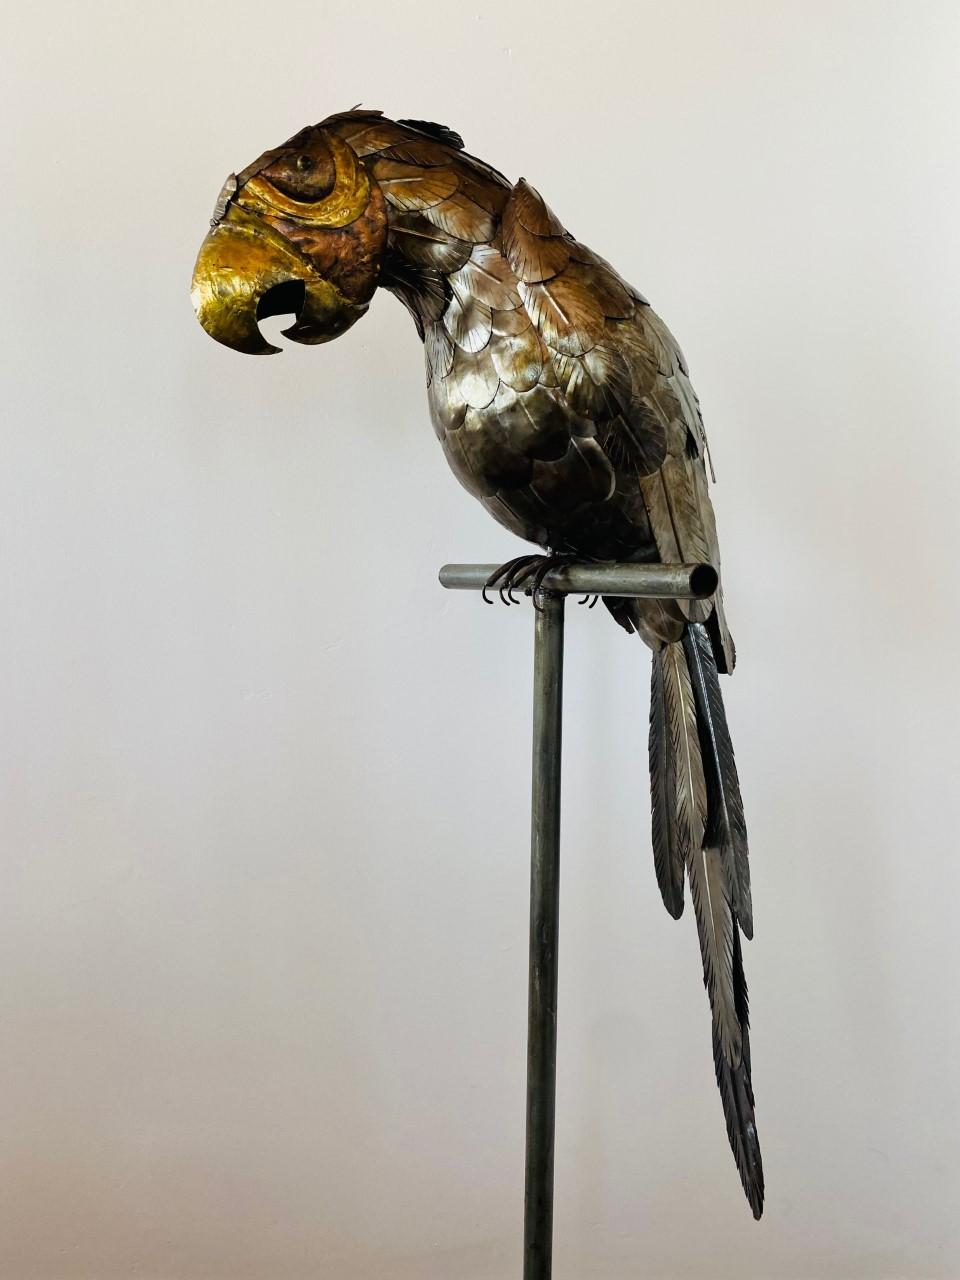 Oiseau perroquet sculptural sur perchoir en métal, réalisé en métaux mixtes (cuivre, laiton). Cette pièce des années 1970 suit le style de Sergio Bustamante. Le mélange de métaux ajoute de l'éclat et de la profondeur à la forme, et les détails sur